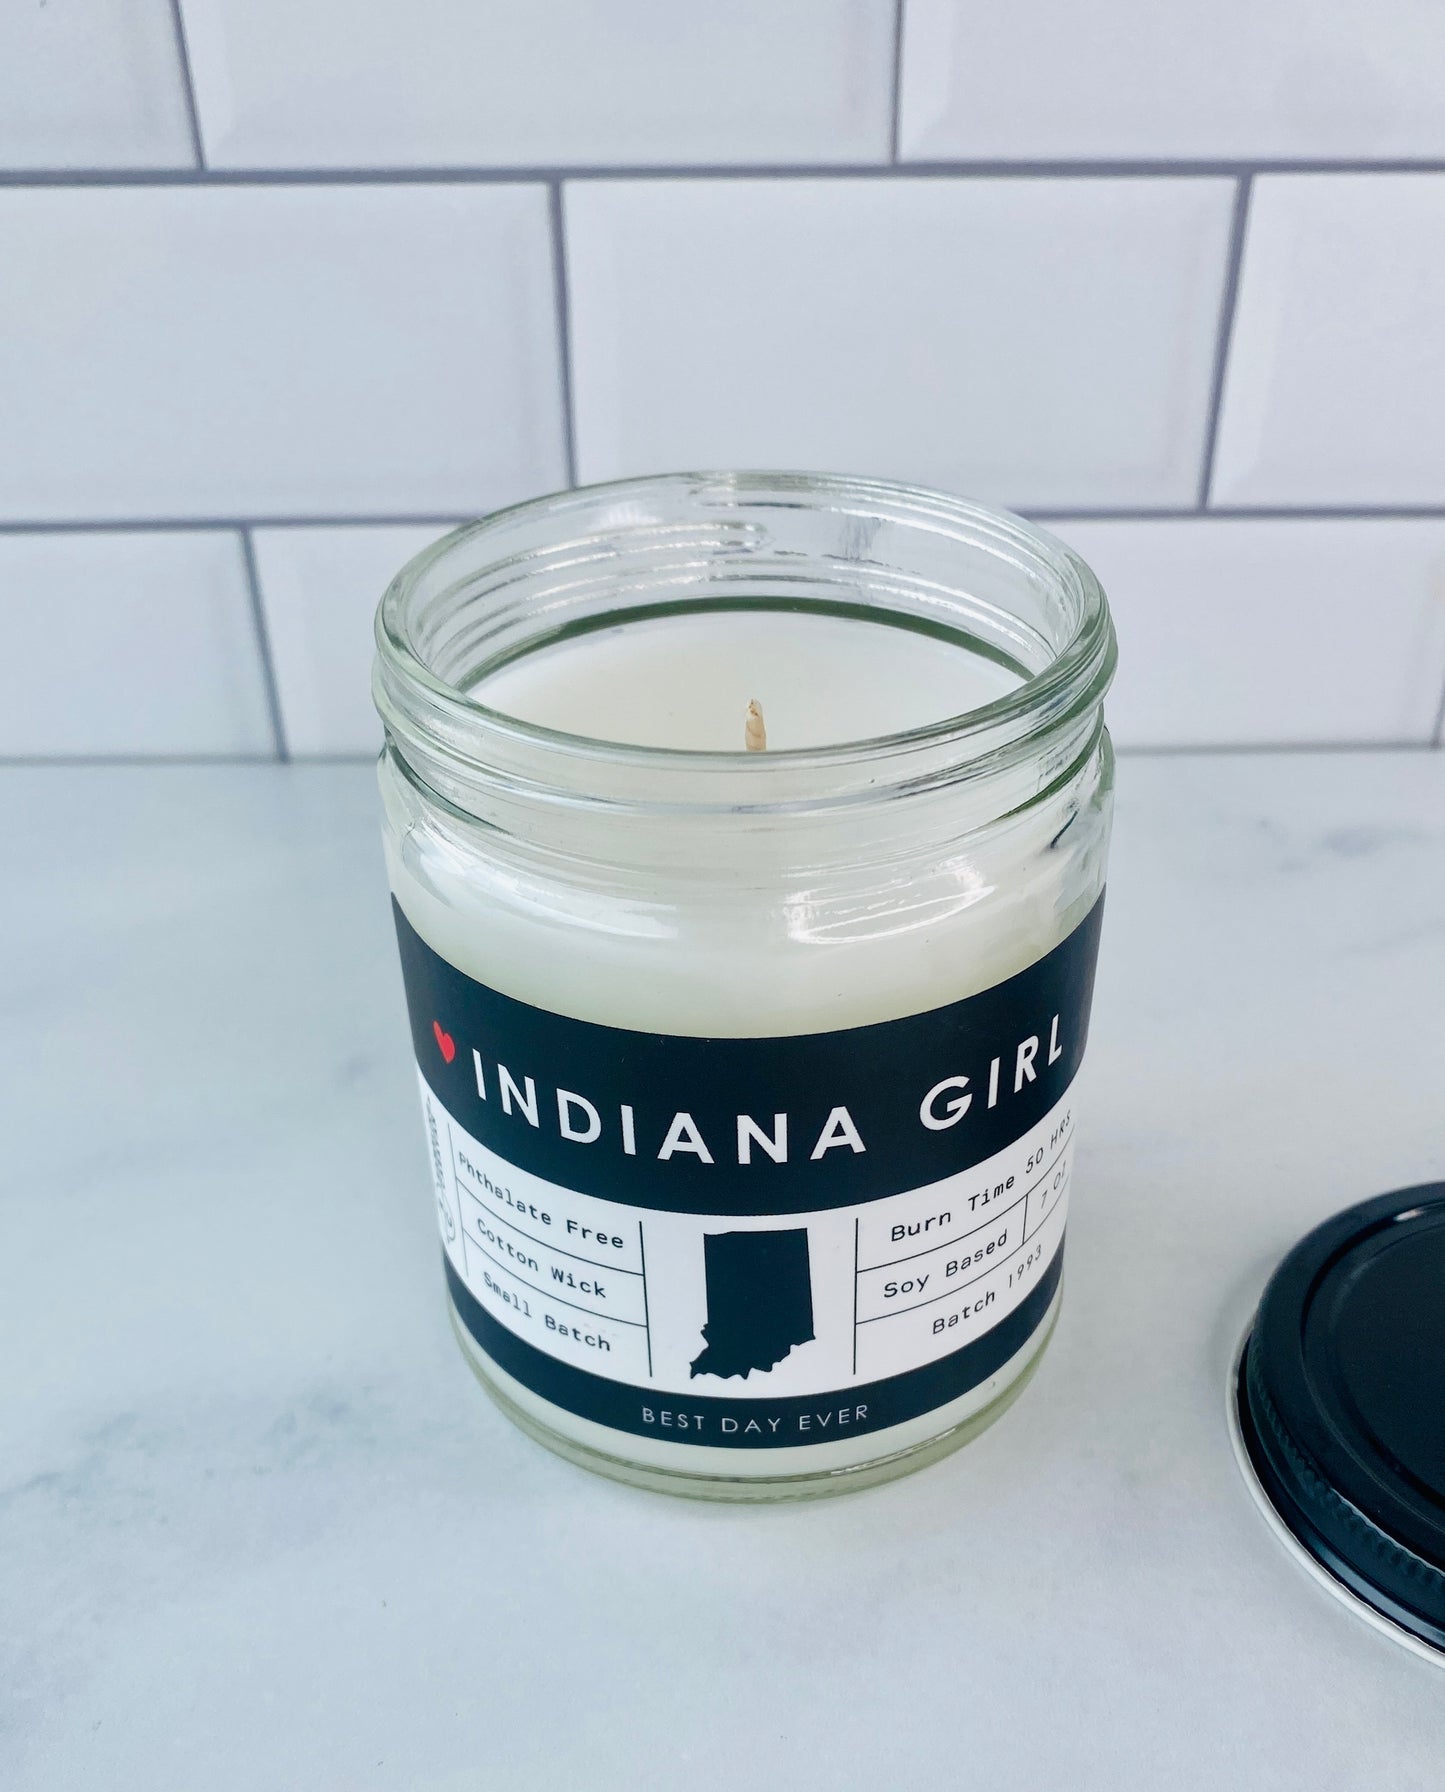 Indiana Girl Candle